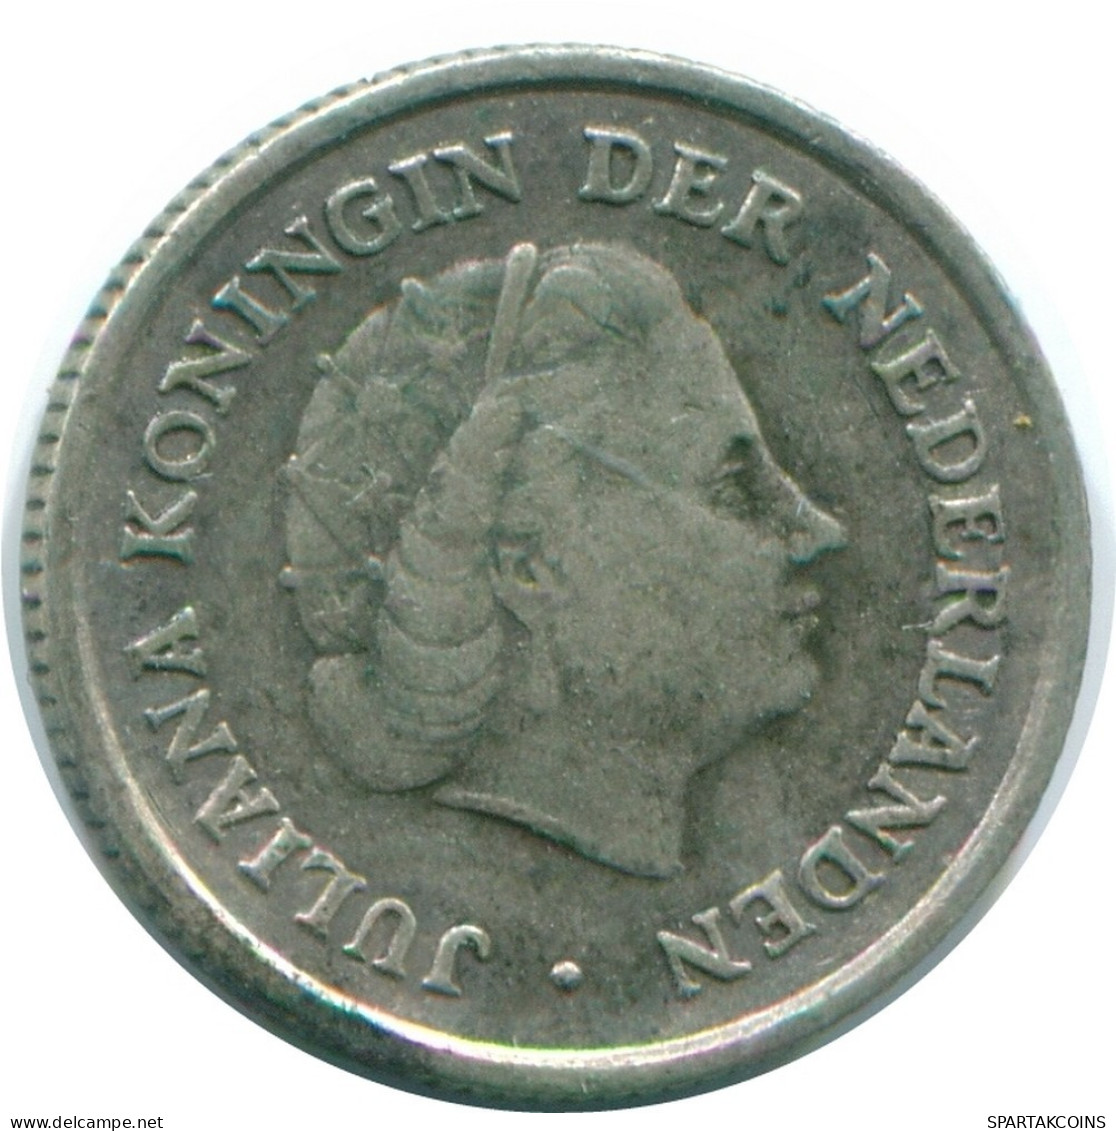 1/10 GULDEN 1963 NIEDERLÄNDISCHE ANTILLEN SILBER Koloniale Münze #NL12500.3.D.A - Niederländische Antillen